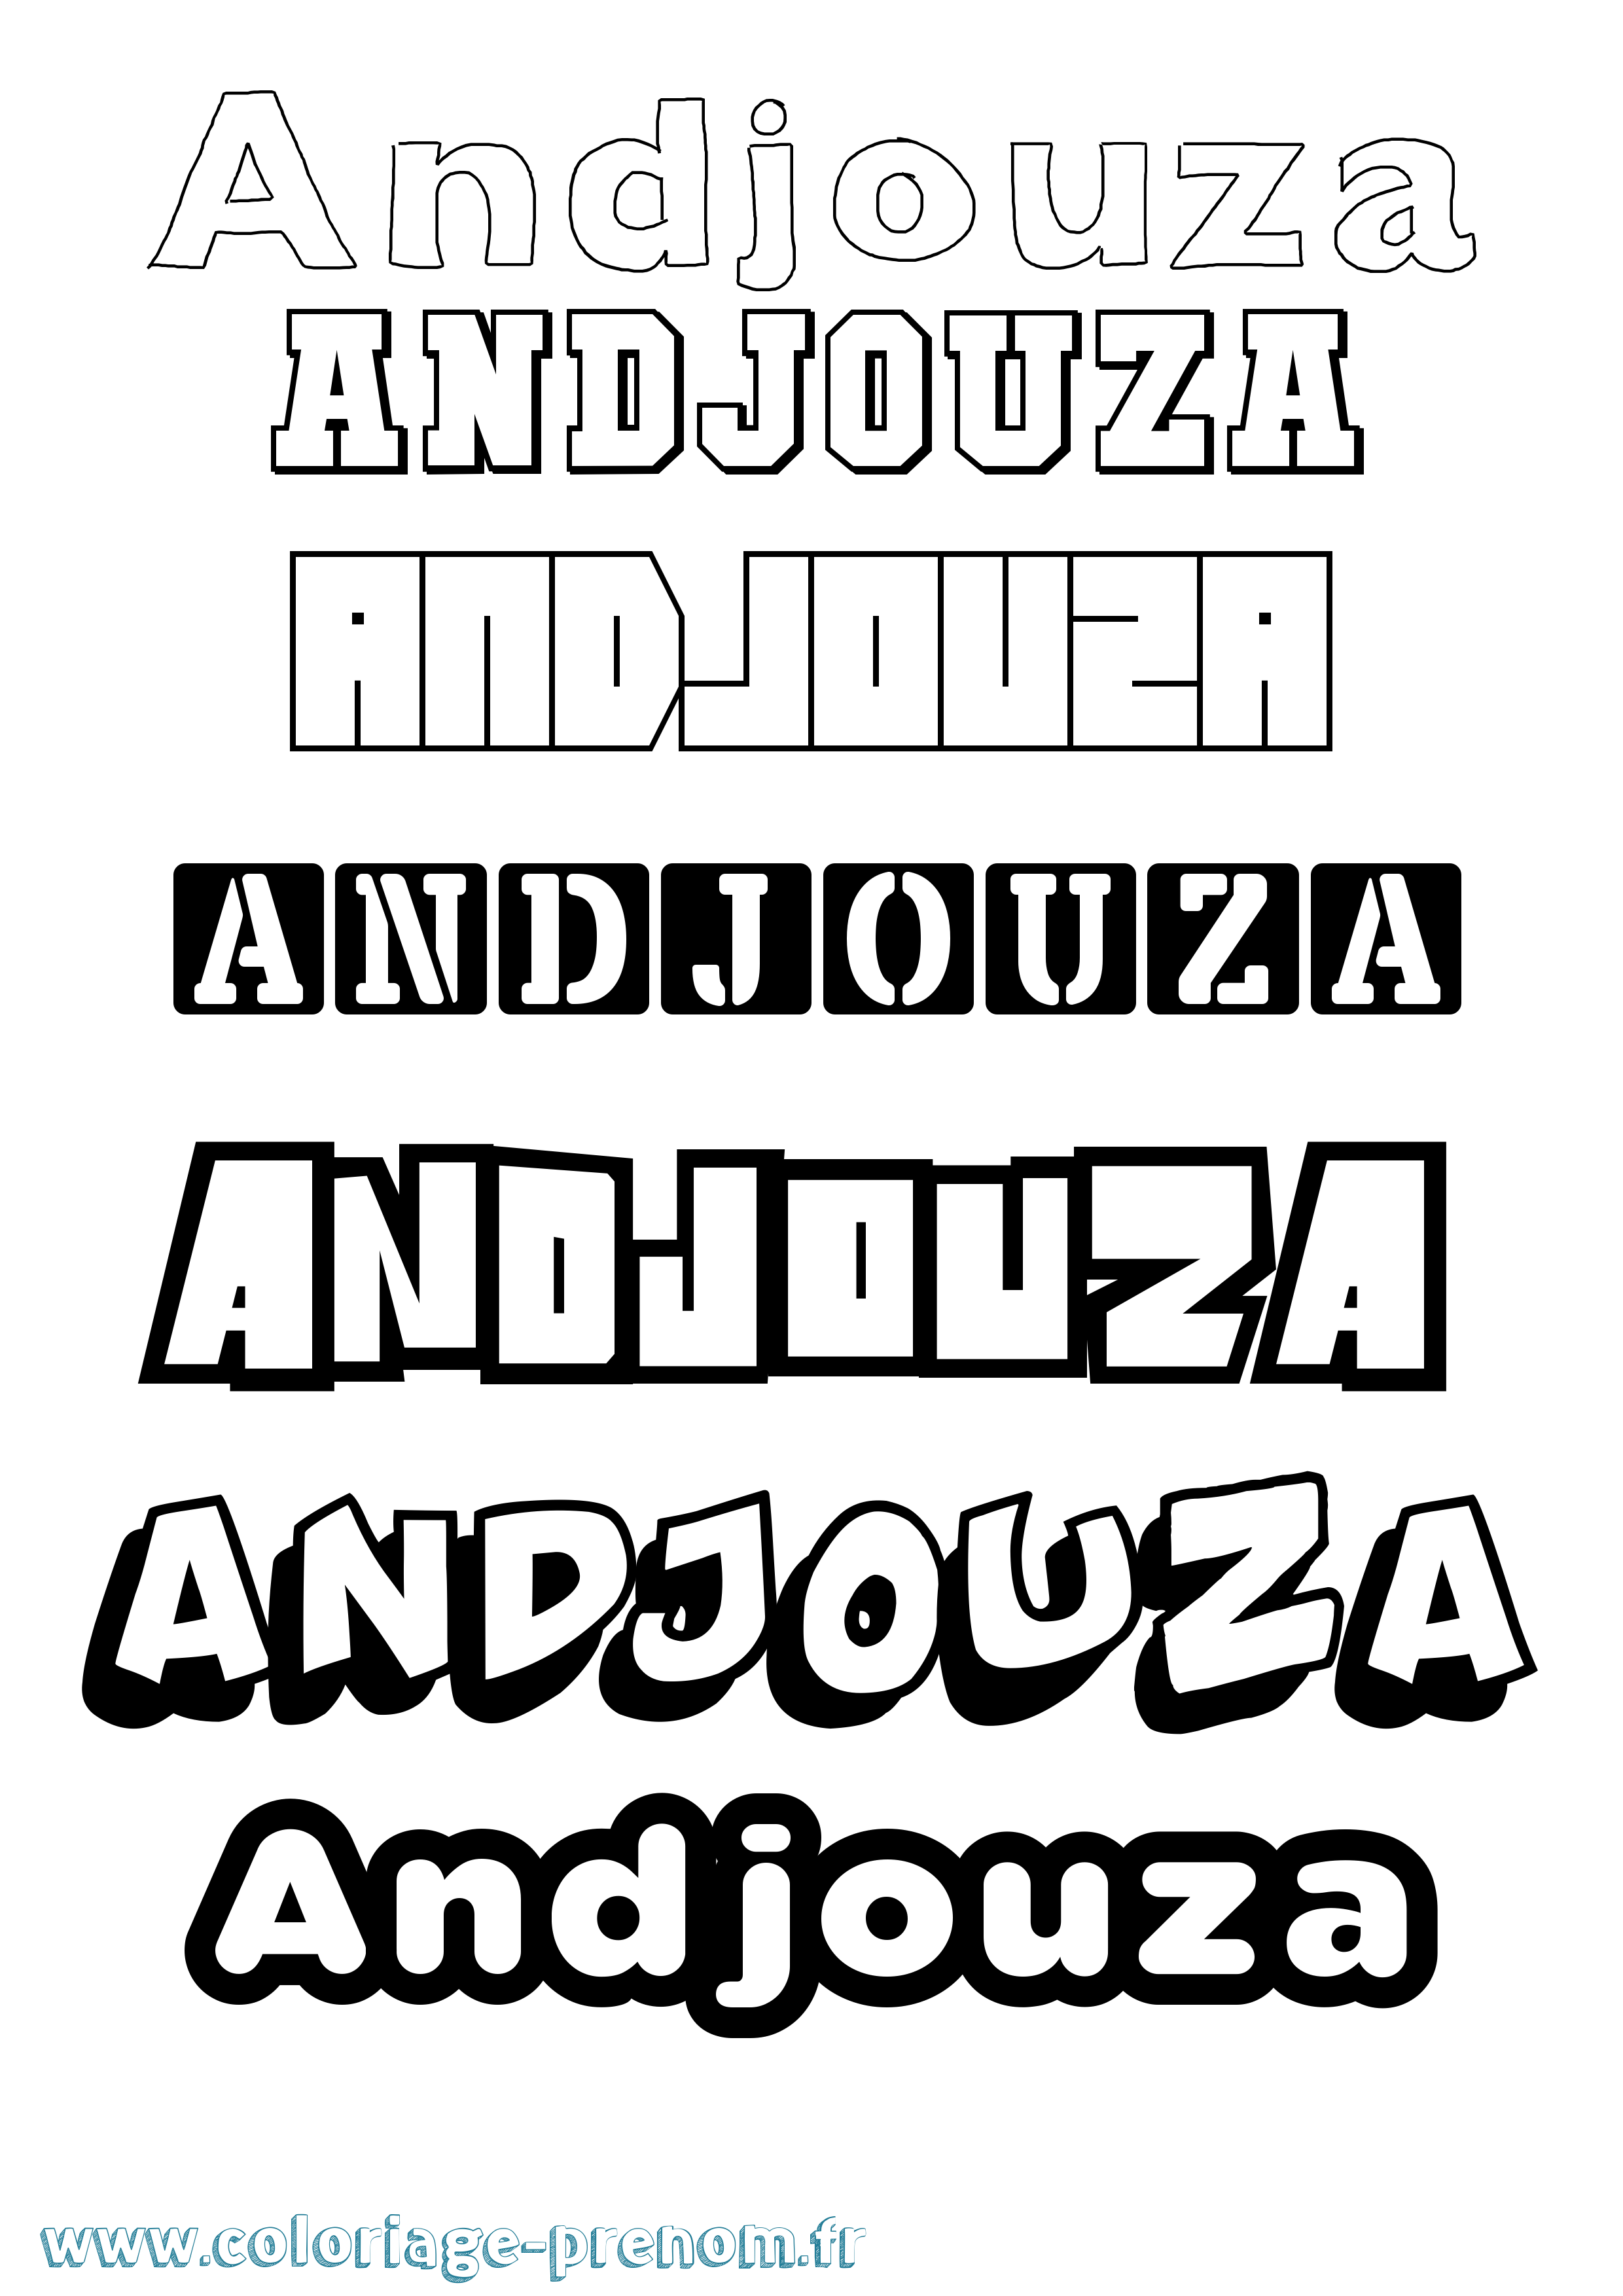 Coloriage prénom Andjouza Simple